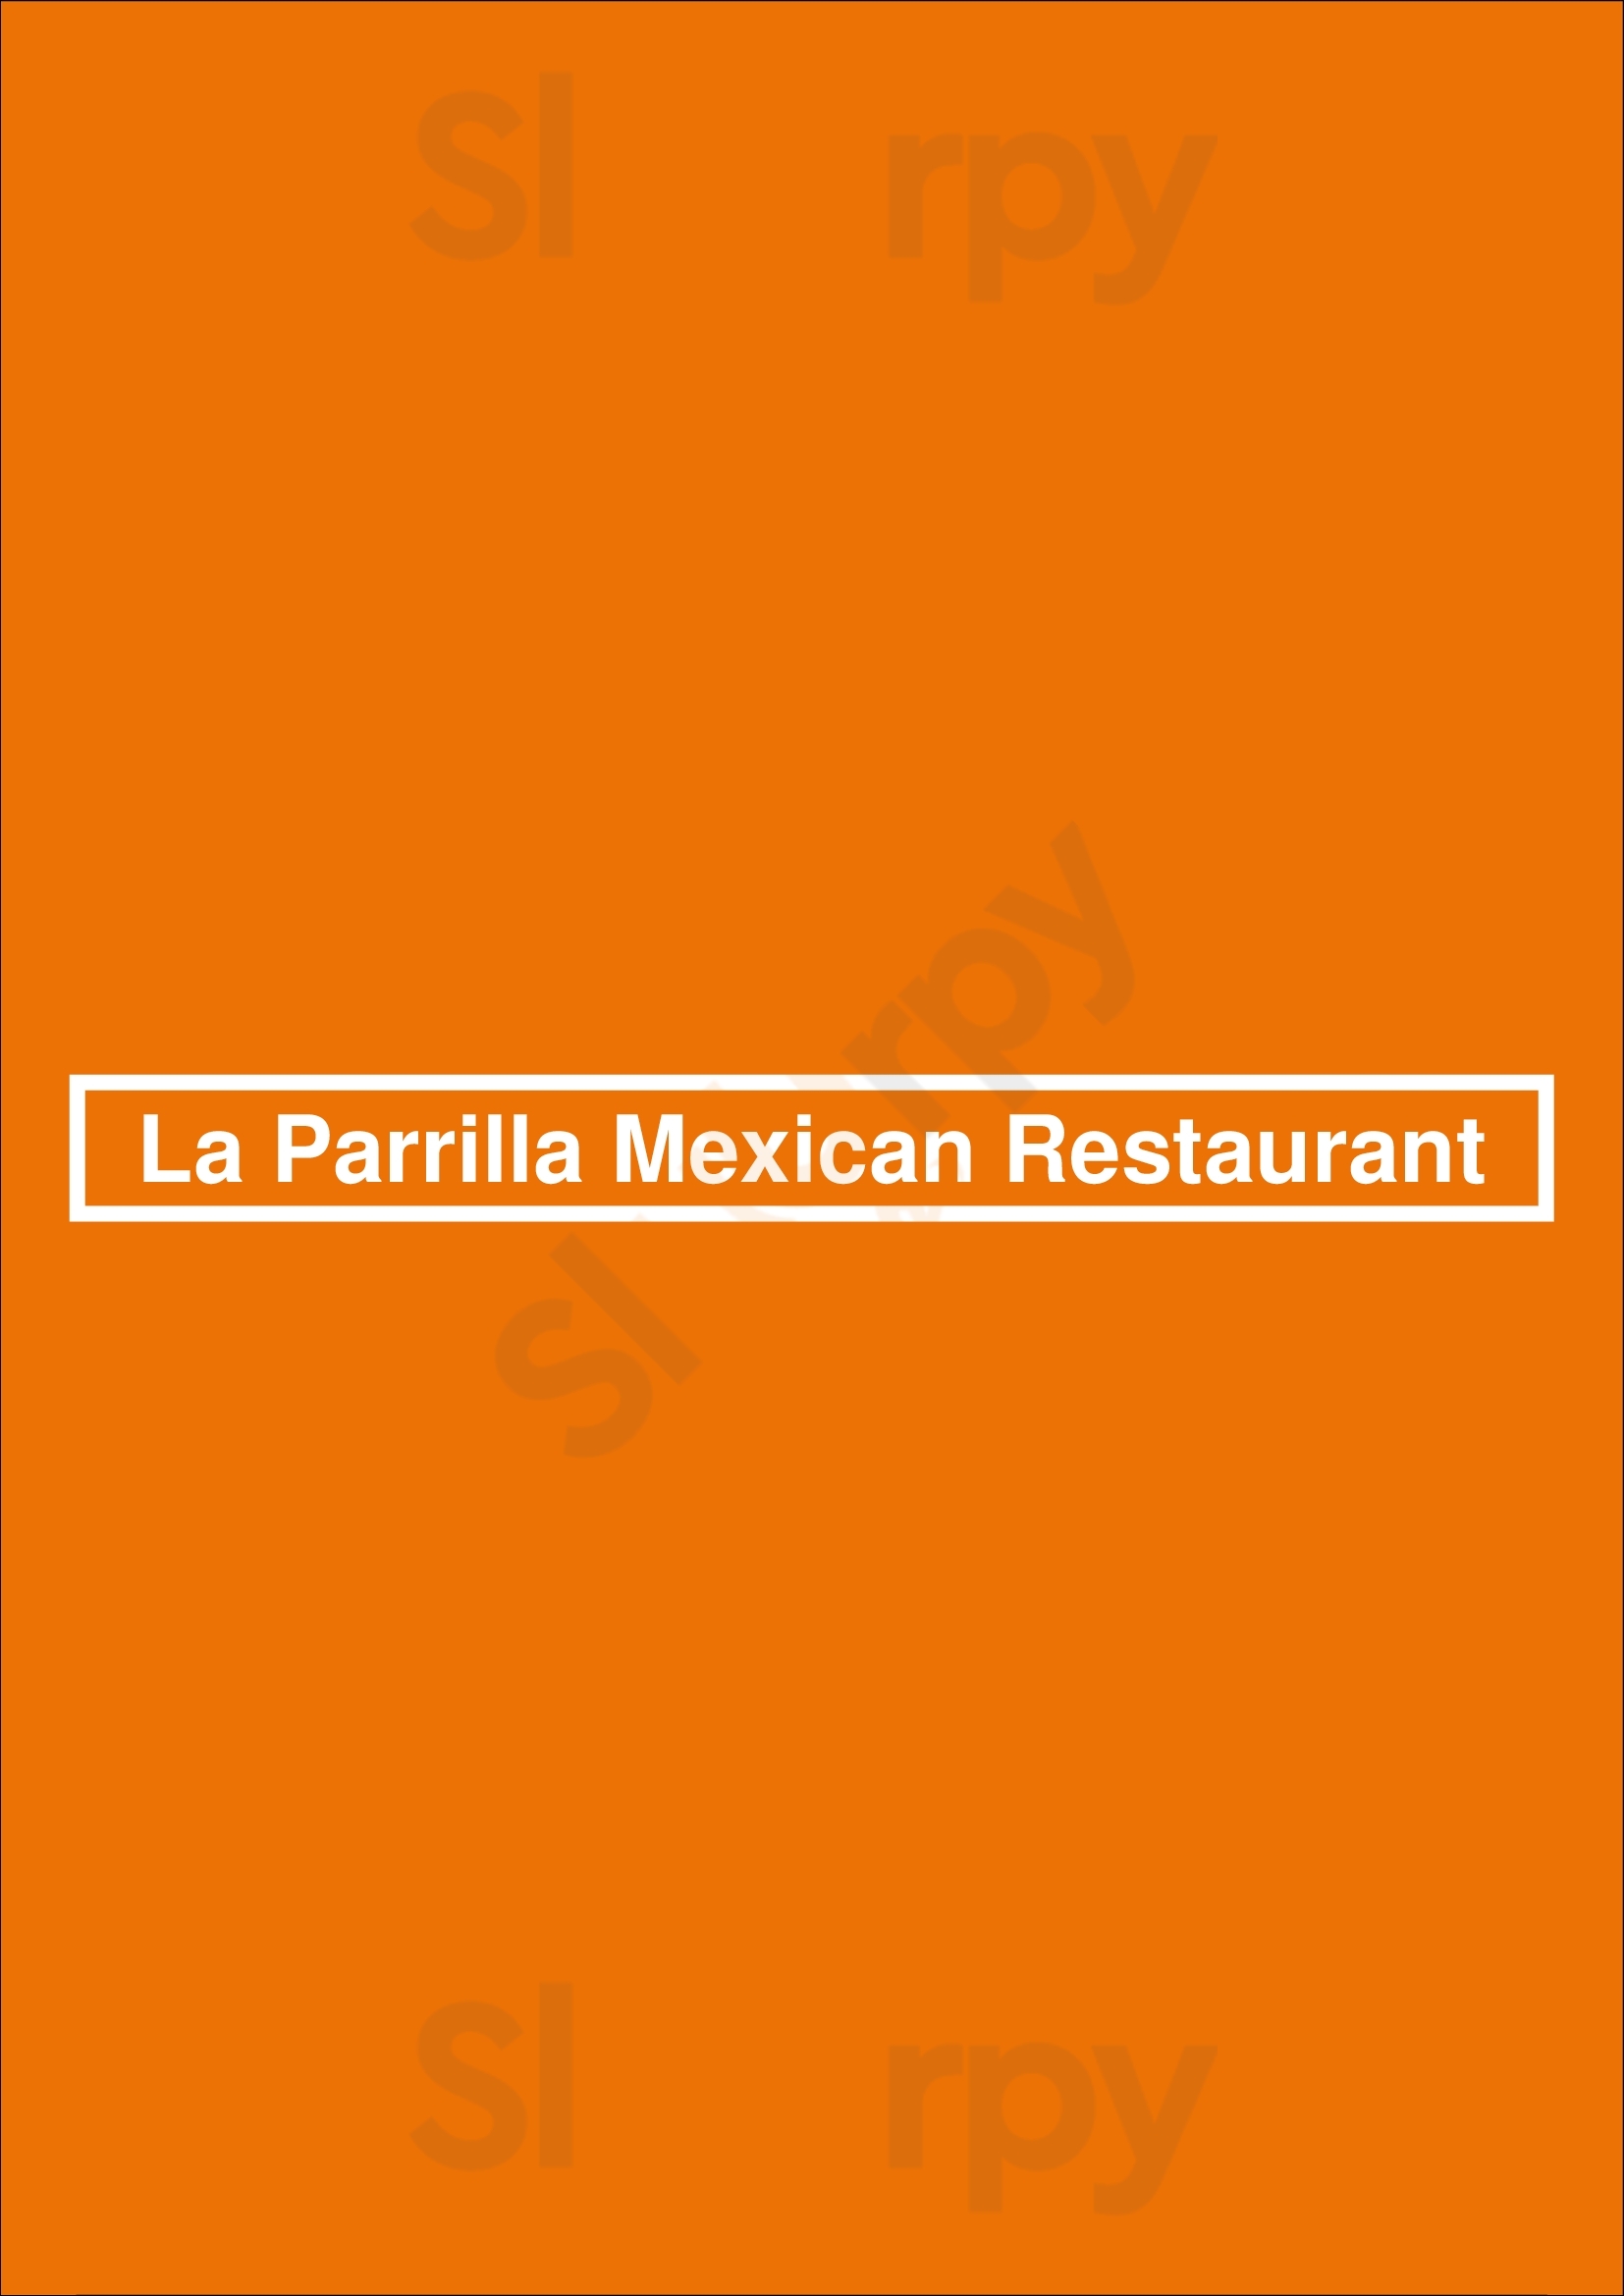 La Parrilla Mexican Restaurant Marietta Menu - 1